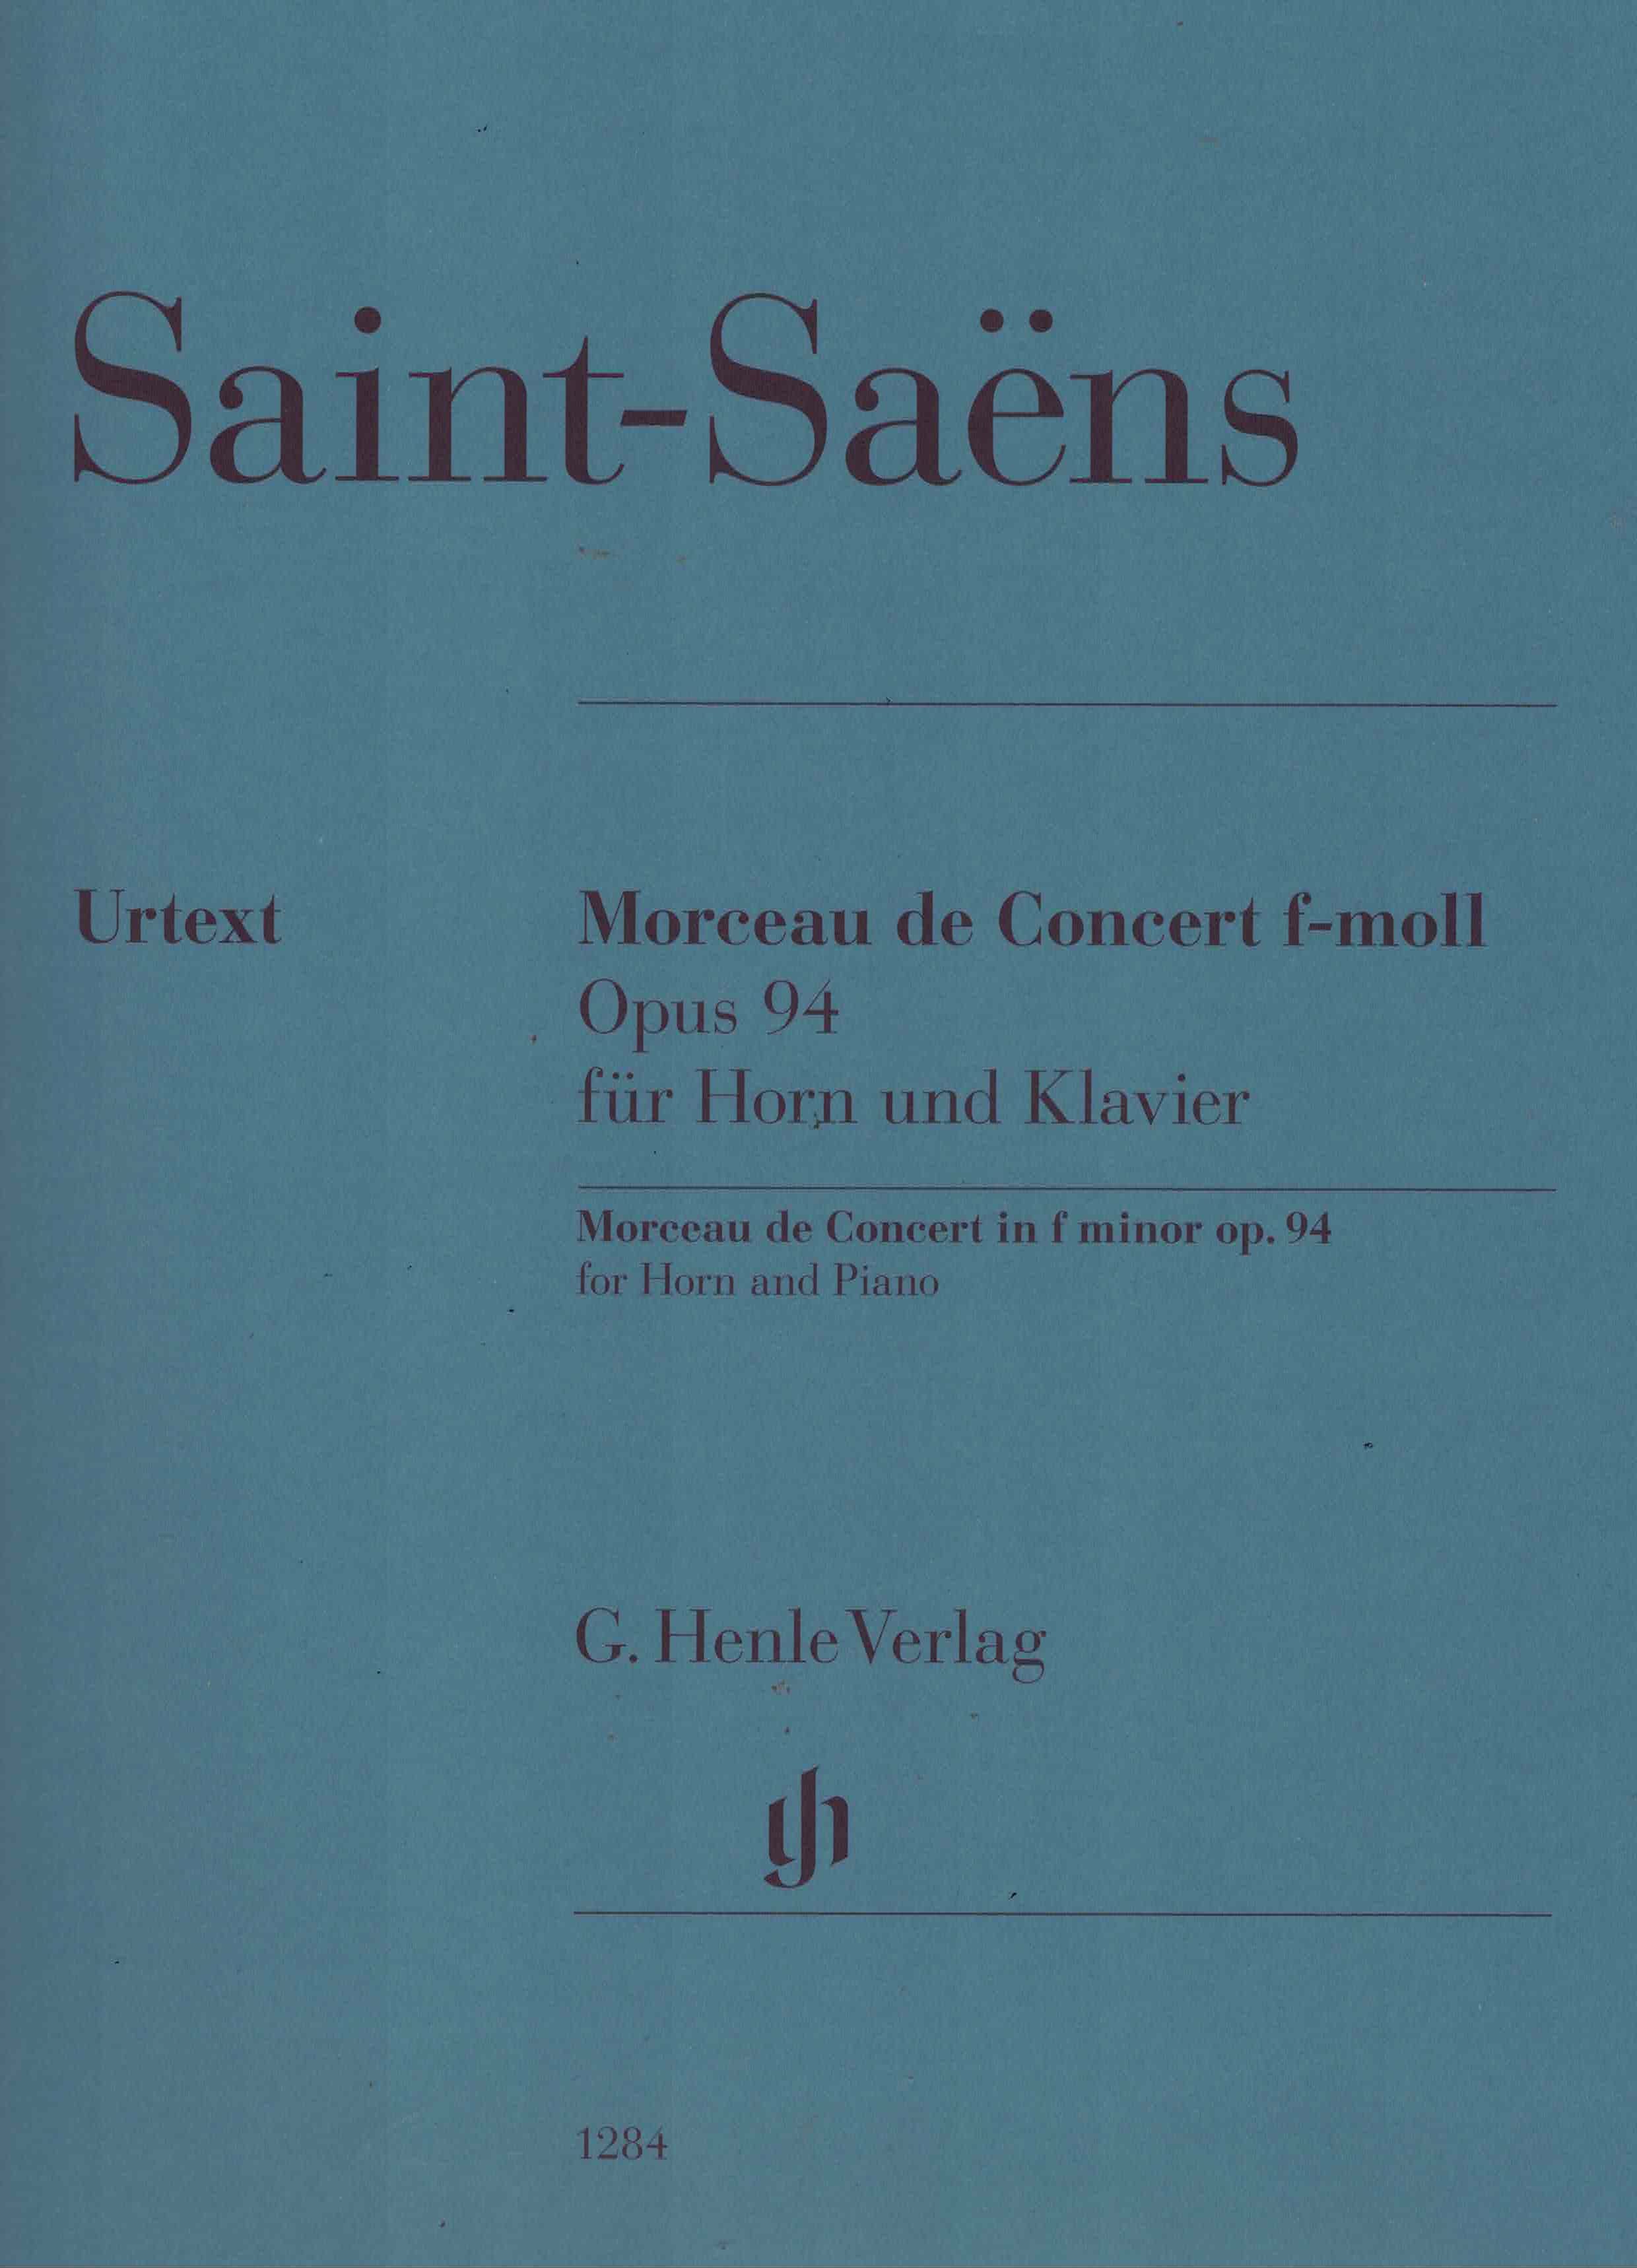 Morceau de Concert, Saint Saens op. 94, Horn/Klavier